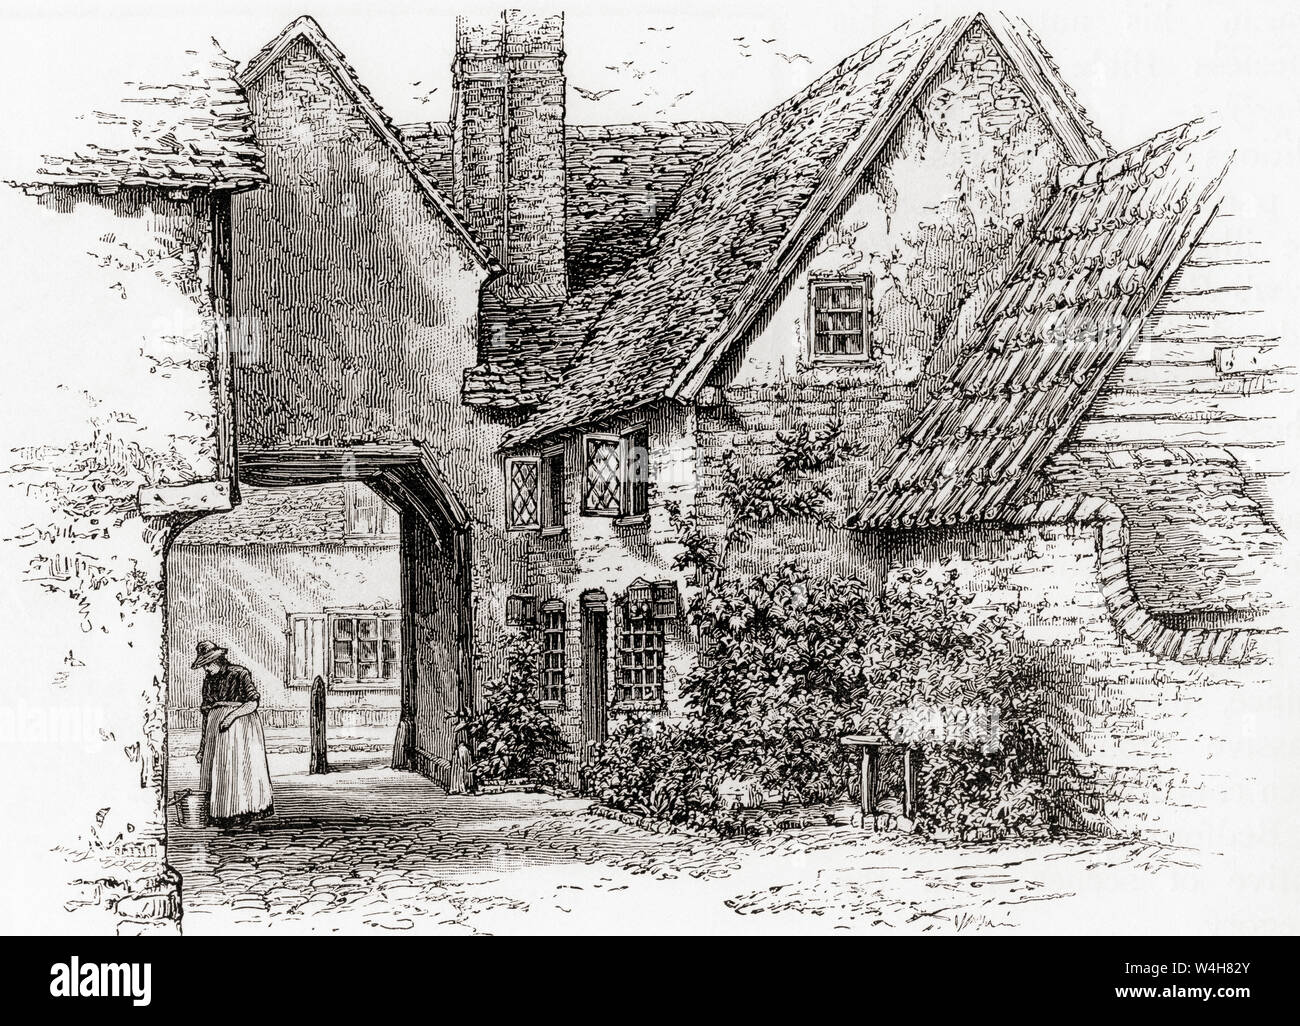 Ein altes Wirtshaus, Elstow, Bedford, England, hier im 19. Jahrhundert. Aus dem Englischen Bilder, veröffentlicht 1890. Stockfoto